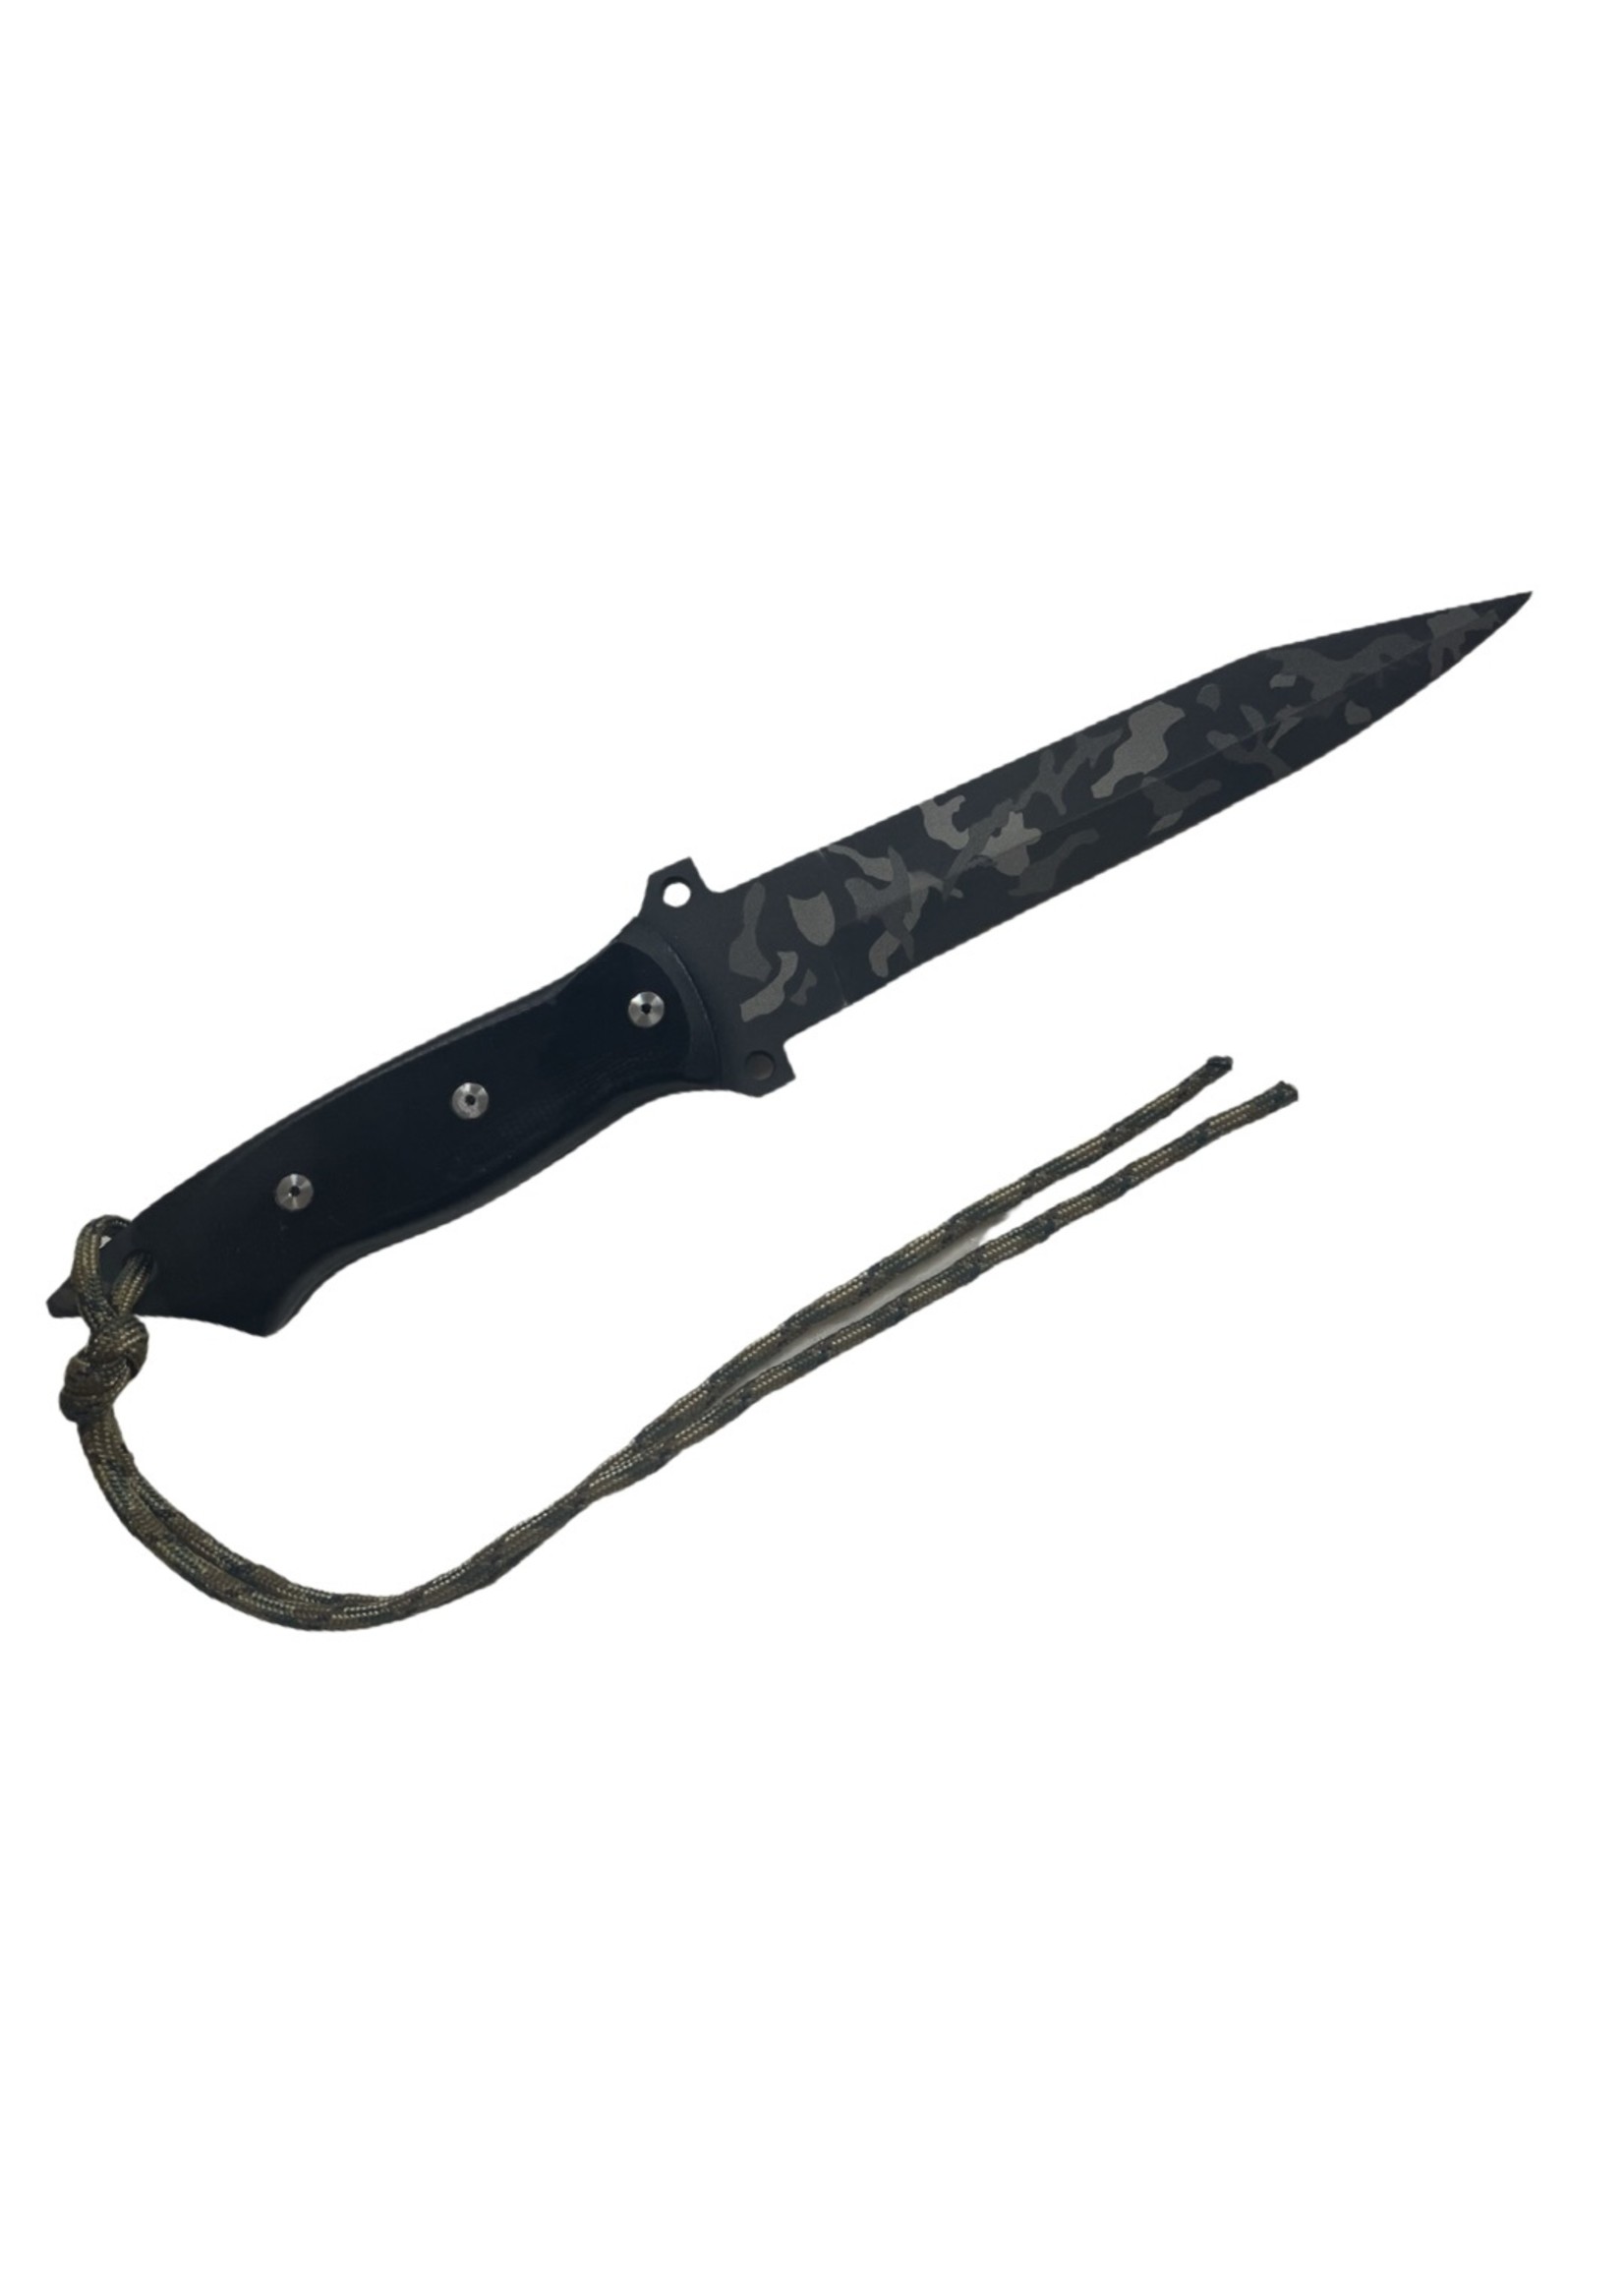 MORRIS KNIVES FIGHTER KNIFE 6 1/2" BLADE O/L 11 1/2" G 10 BLK S30V 21-015